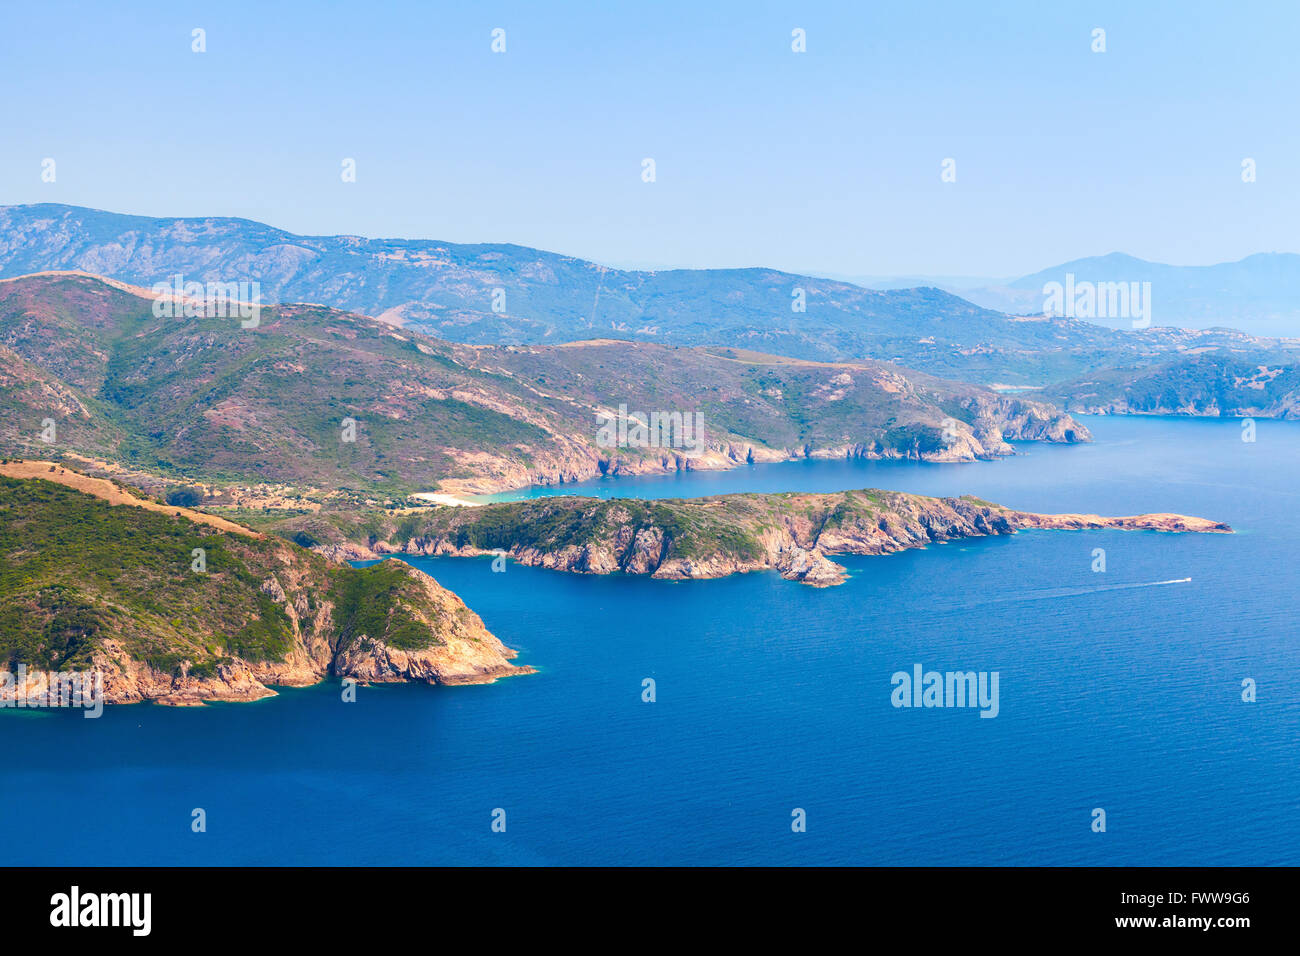 Paisaje de isla mediterránea francesa de Córcega. Corse-du-Sud, Piana región. Las montañas costeras y el mar en un día de verano Foto de stock